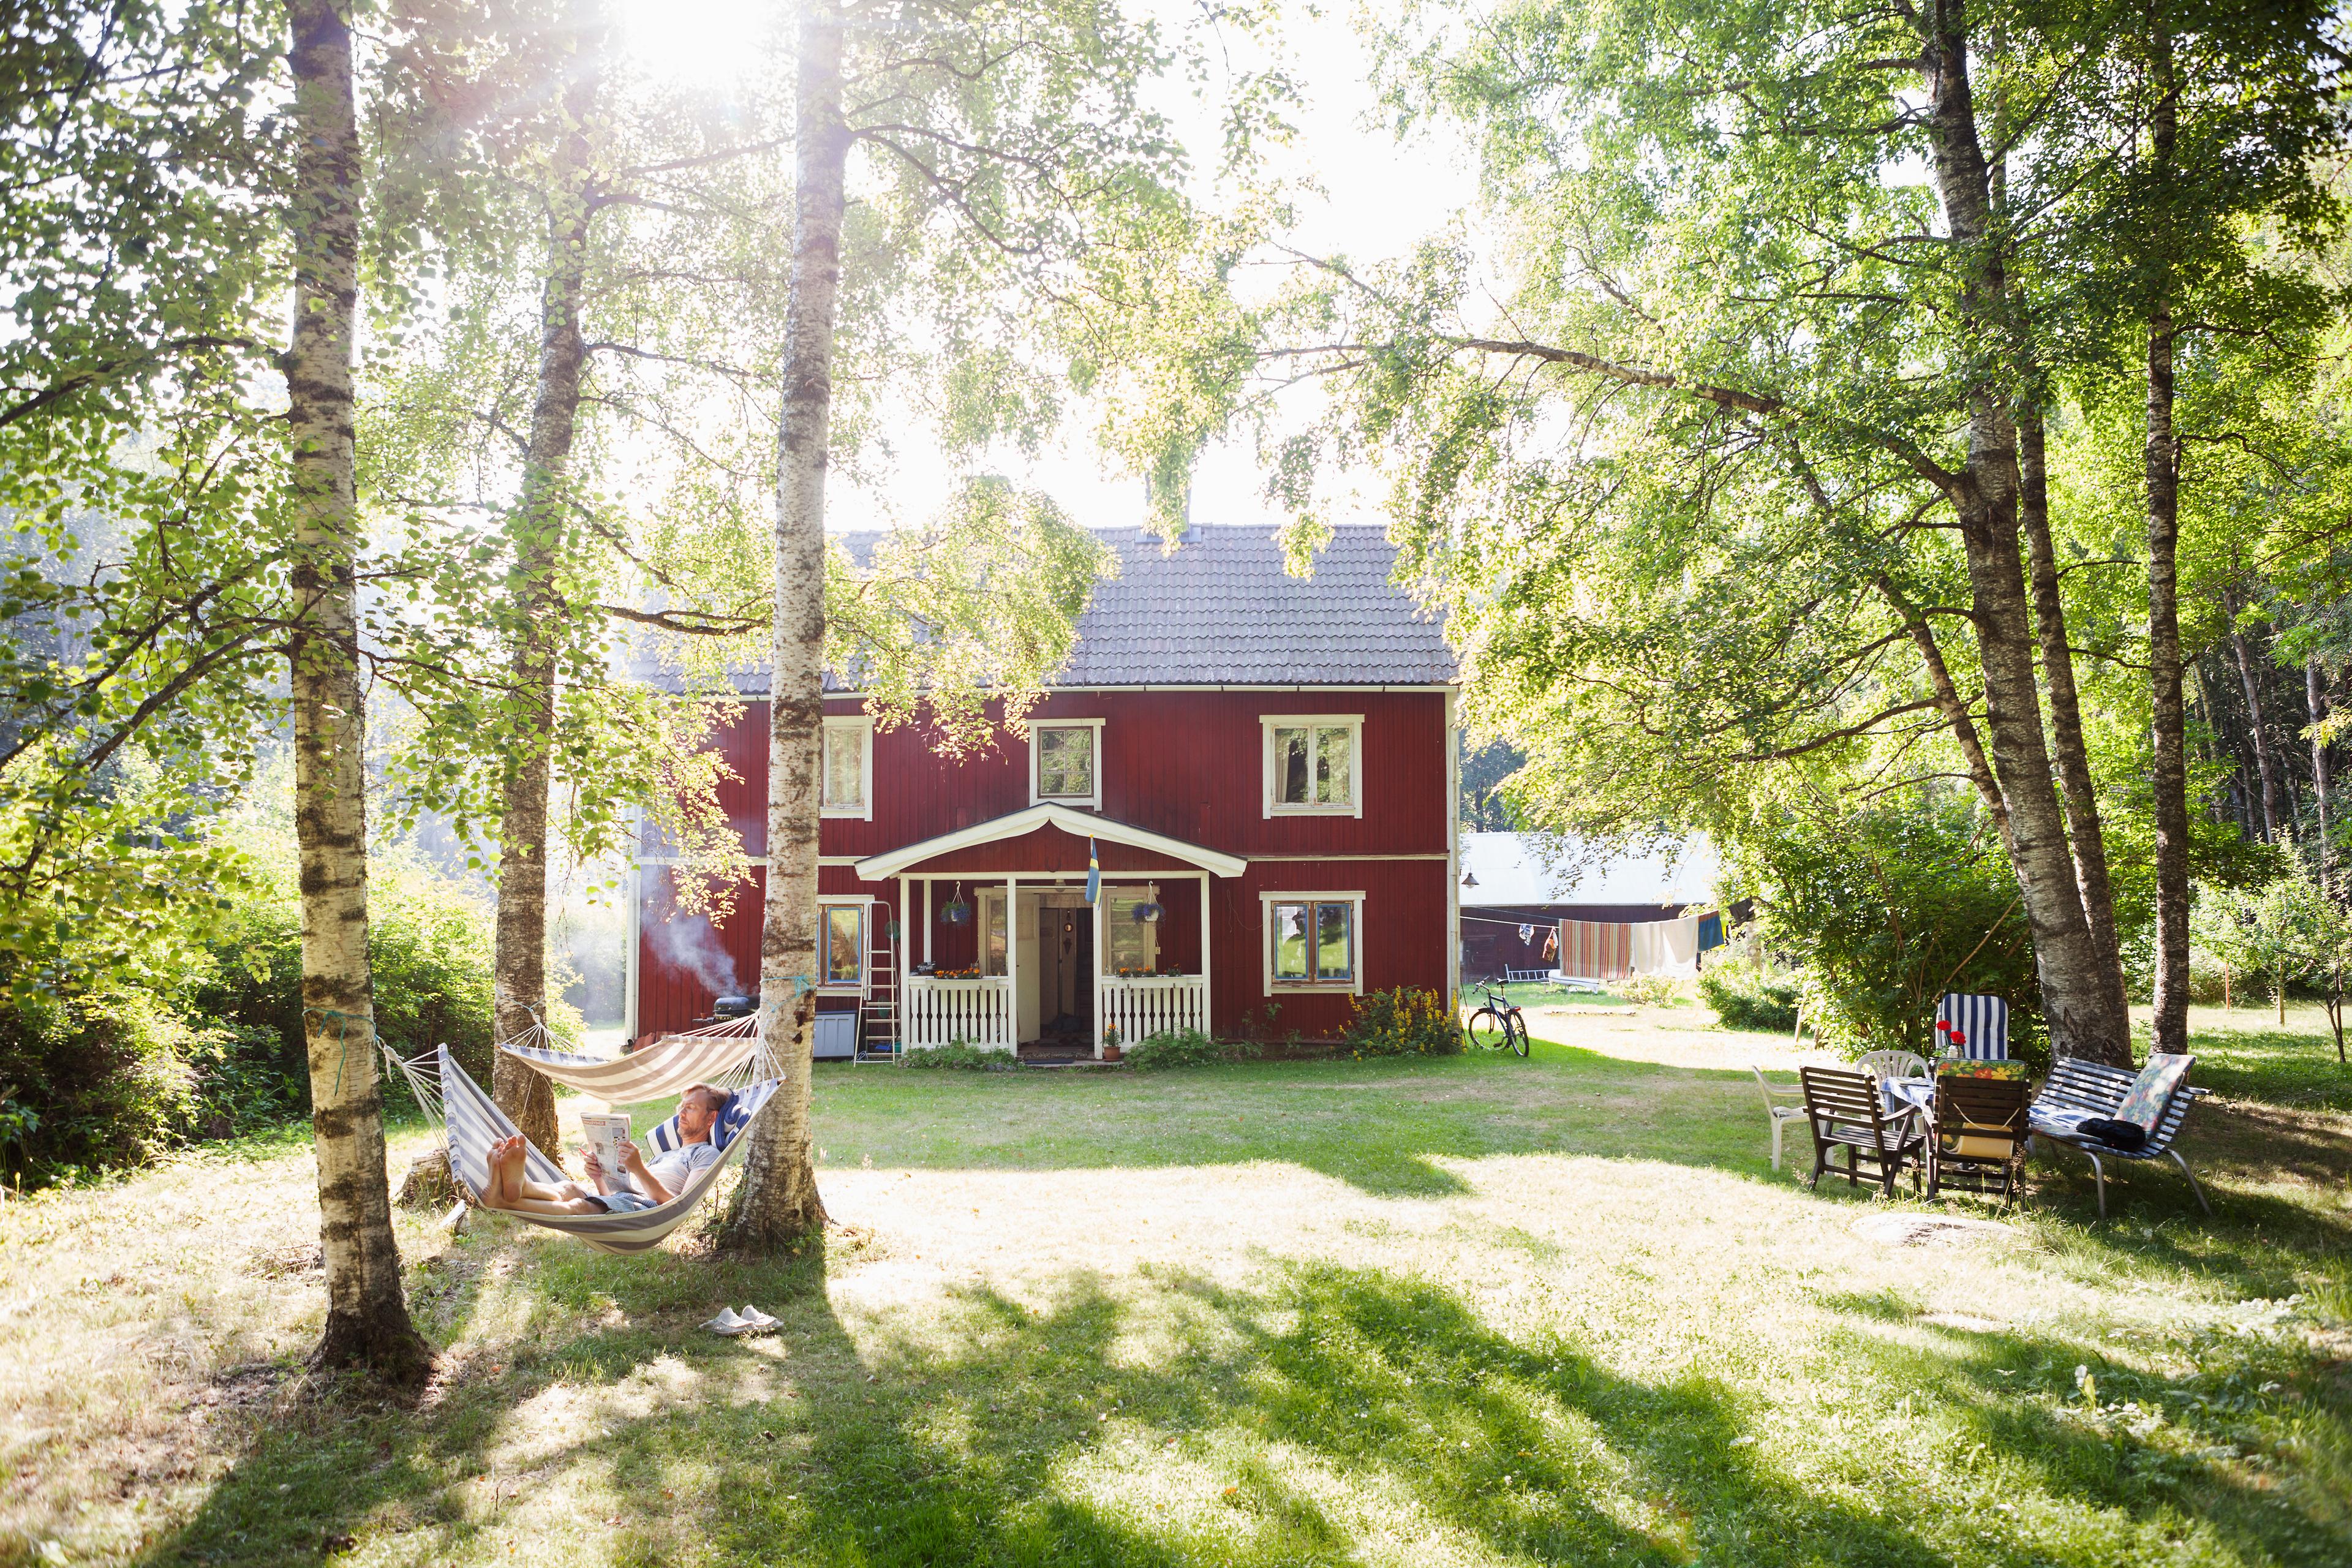 منزل سويدي تقليدي أحمر اللون بها مساحات خضراء وأشجار وأراجيح وأثاث حدائق.